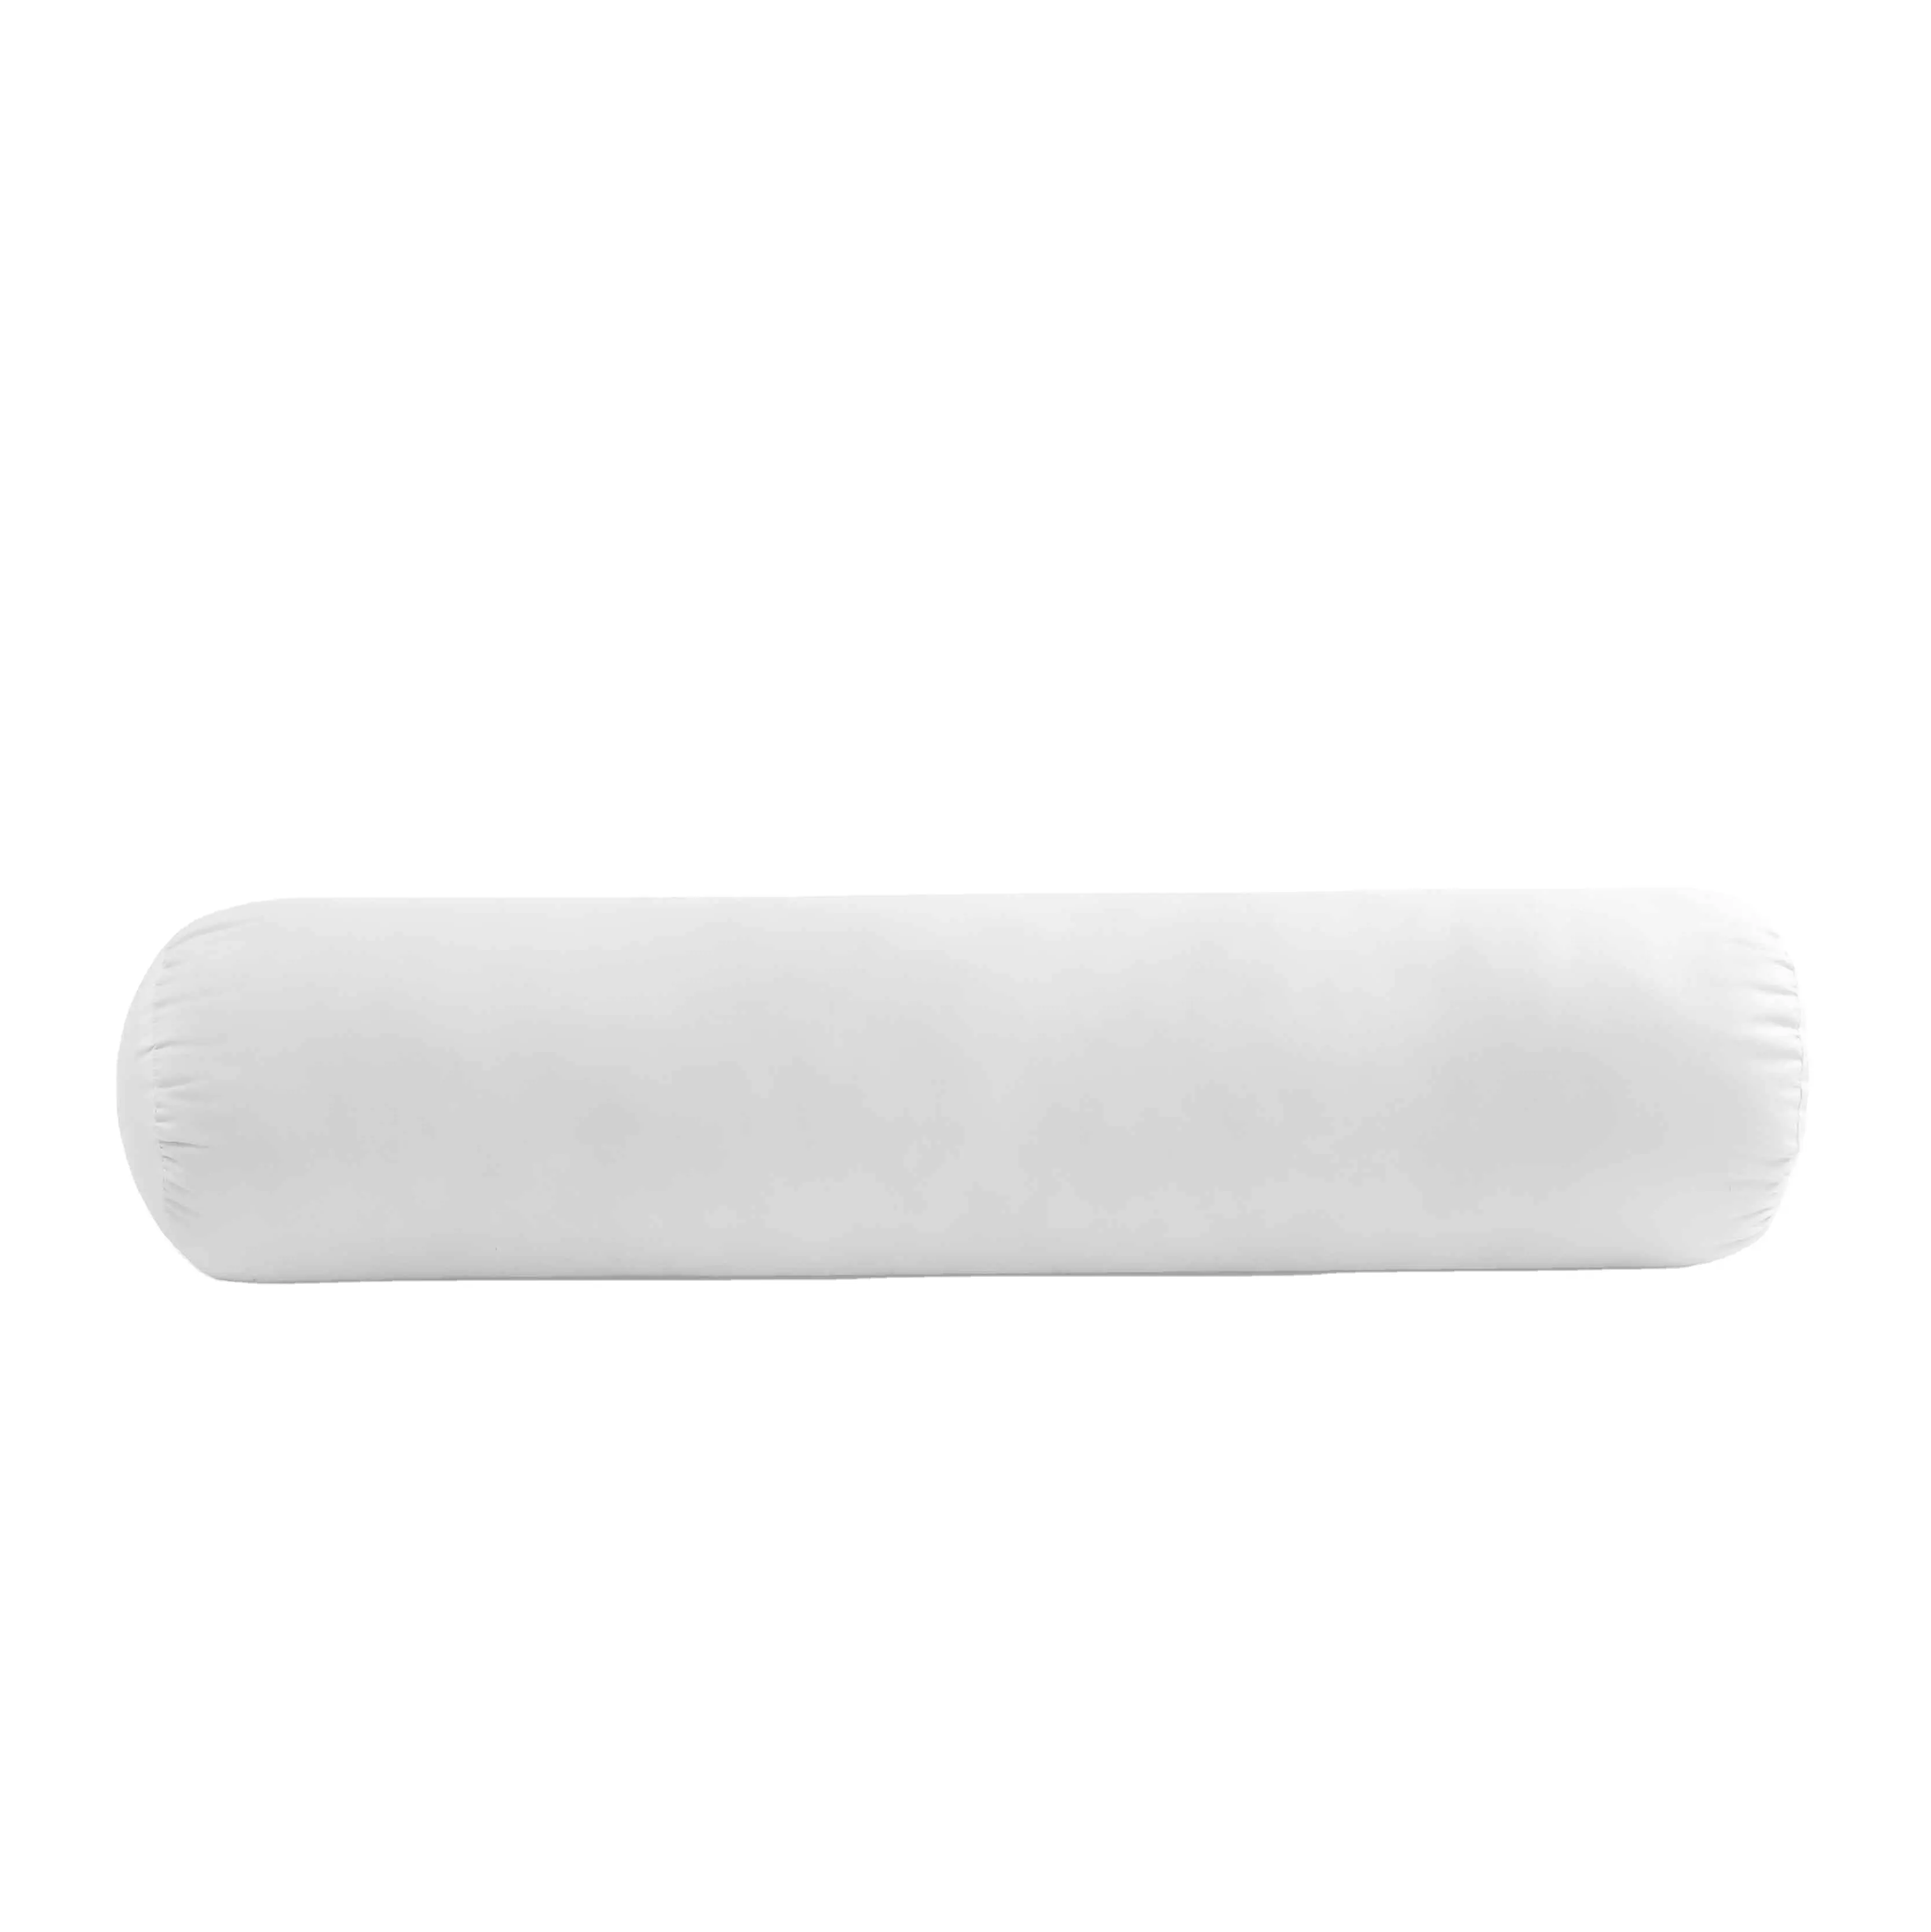 Cuscino di sostegno in tessuto di cotone di alta qualità OEM all'ingrosso con imbottitura in poliestere, proprietà morbide e lisce per un sonno confortevole